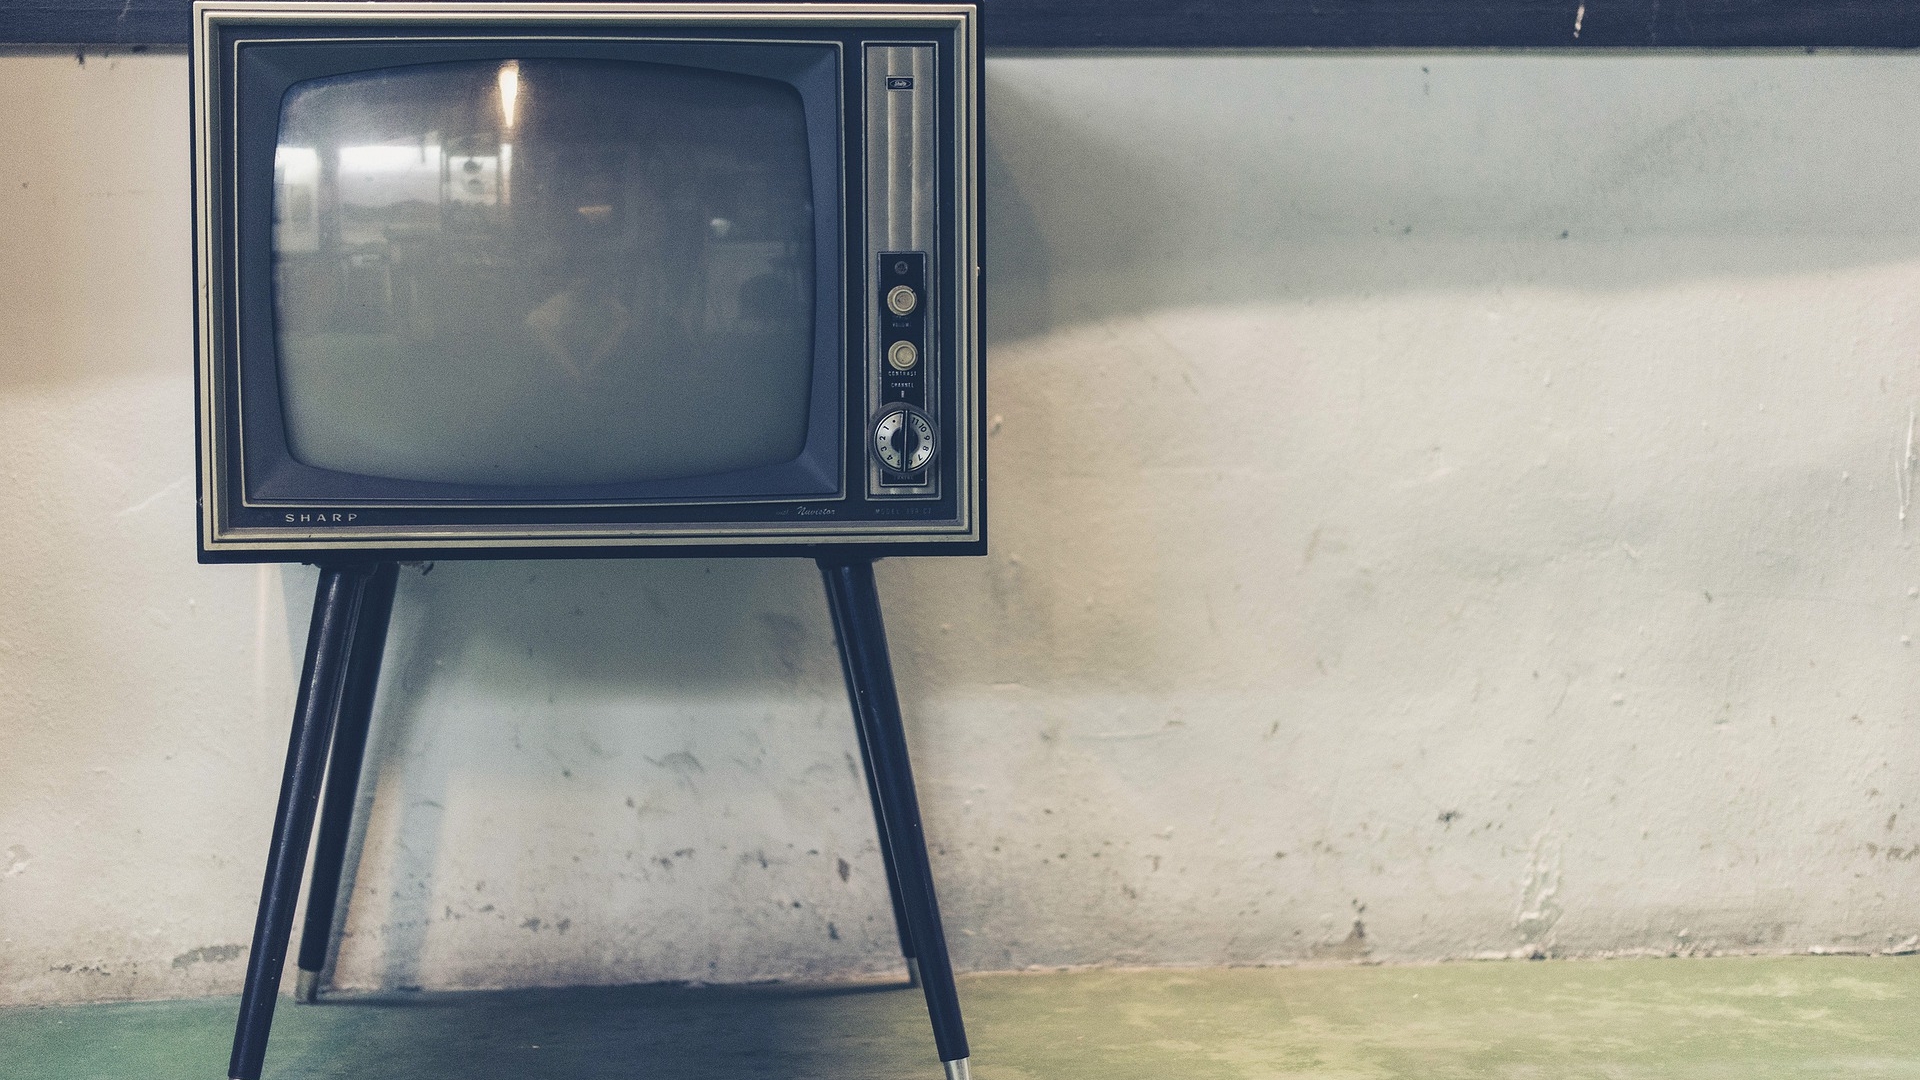 Tv analógica com pés de madeira localizados no canto esquerdo da foto